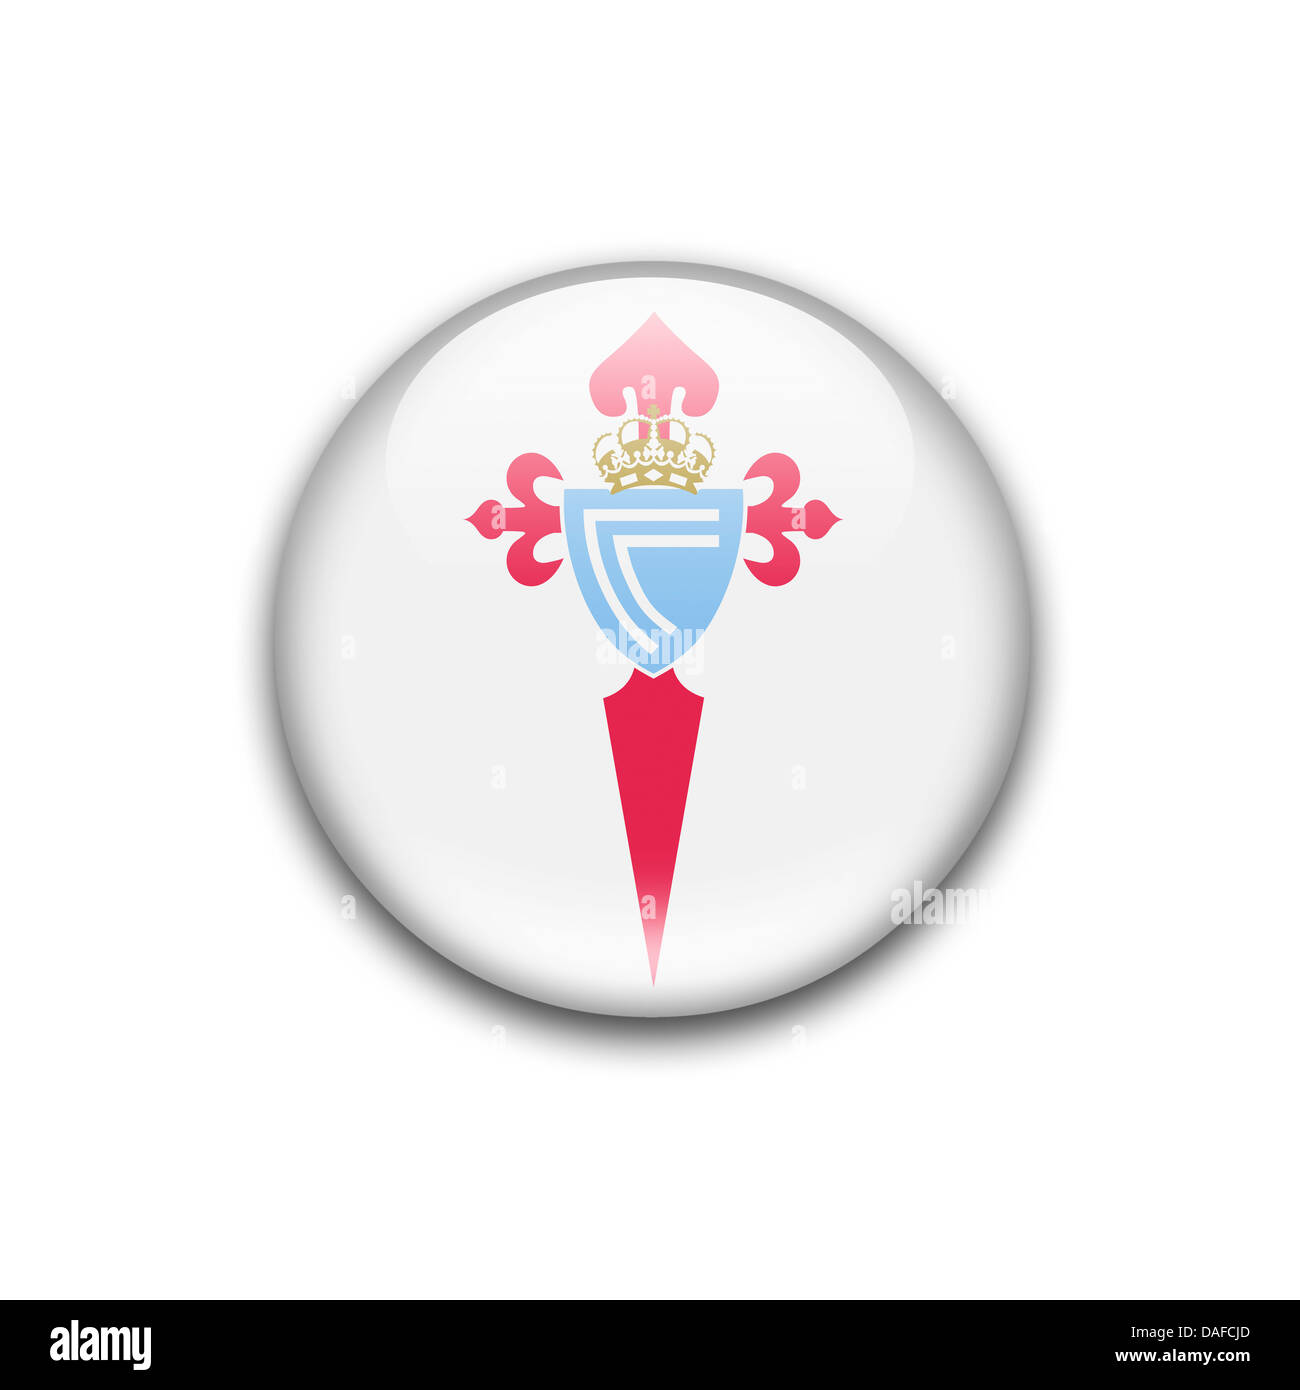 Celta De Vigo Symbol Icon Logo Flag Emblem Stock Photo Alamy